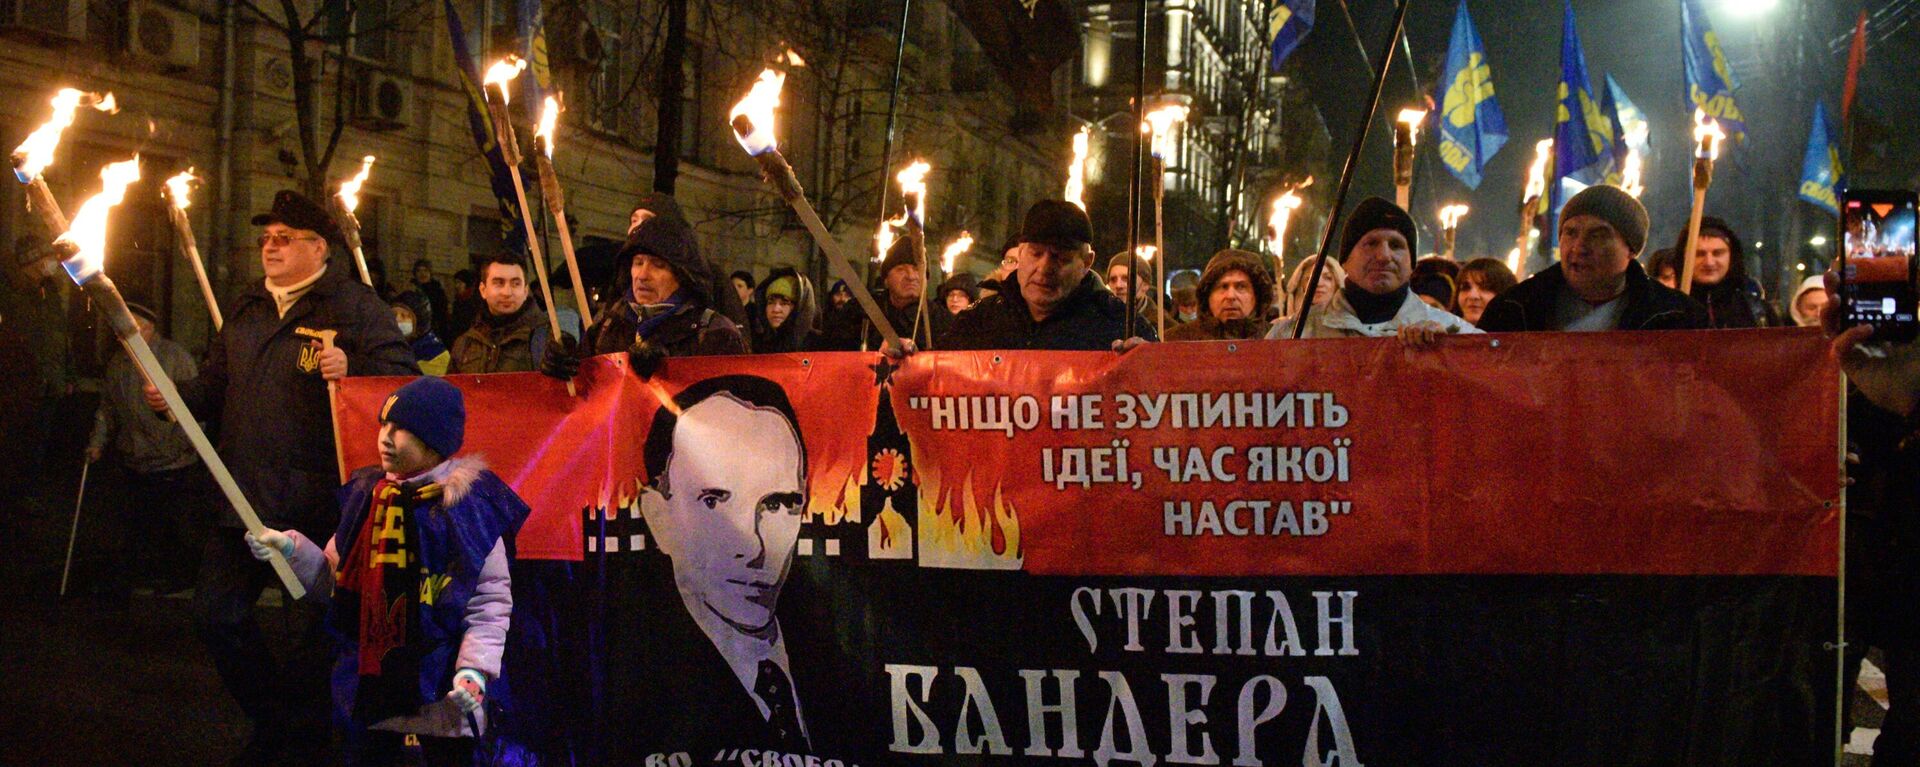 Марш националистов в Киеве - Sputnik Latvija, 1920, 03.01.2022